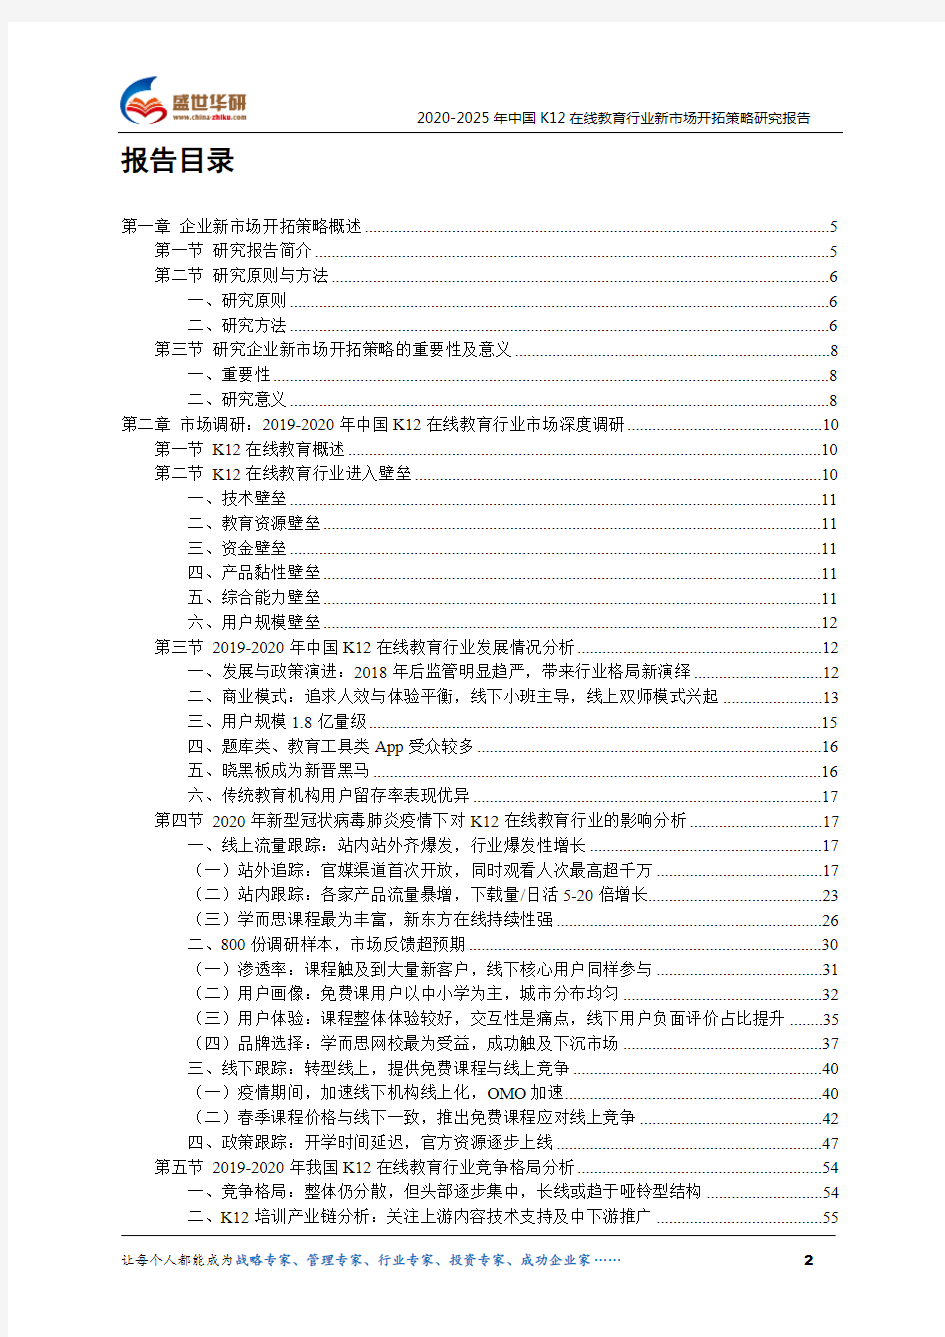 【完整版】2020-2025年中国K12在线教育行业新市场开拓策略研究报告